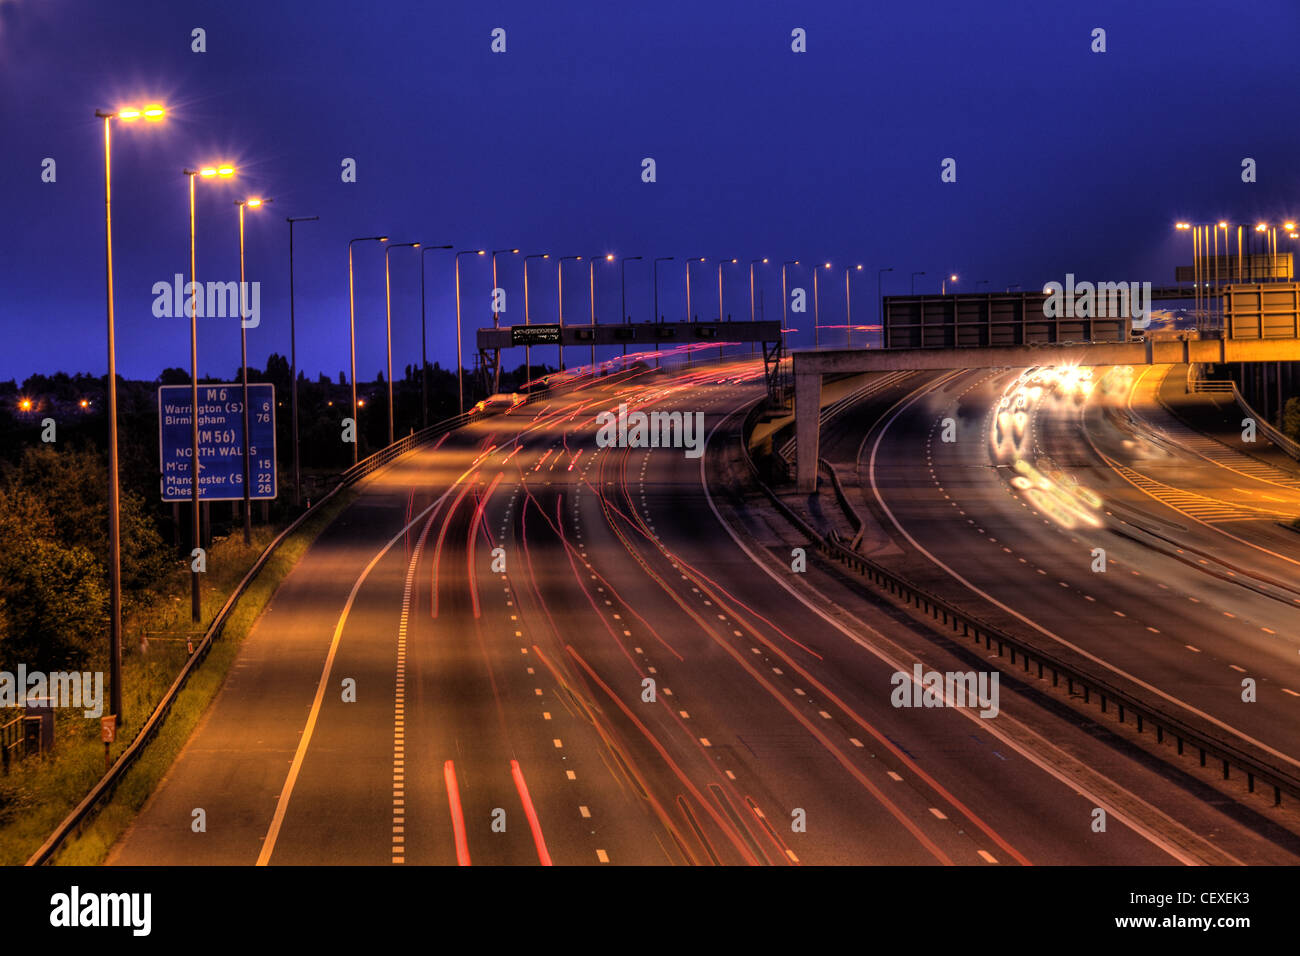 M6 sortie 21 au crépuscule, exposition lente prise de vue de nuit, pont du viaduc de Thelwall, Warrington, Cheshire, Angleterre, ROYAUME-UNI, WA3 6DR Banque D'Images